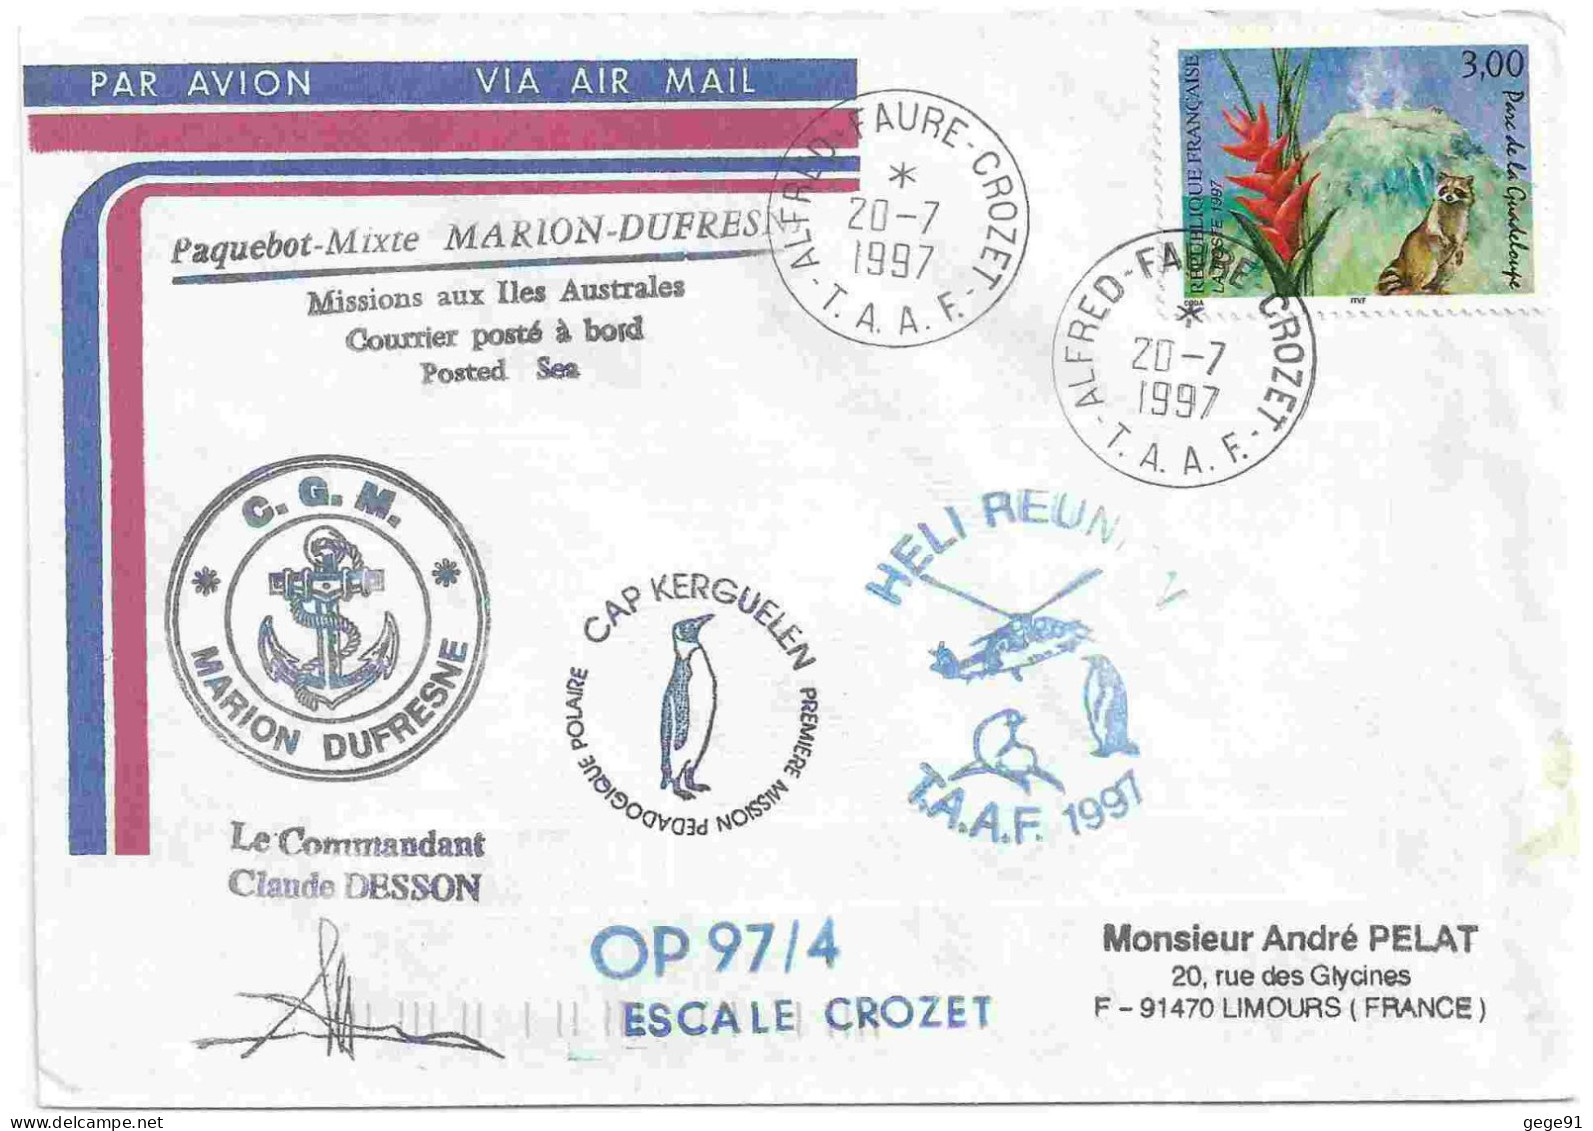 YT 3055 Parc De La Guadeloupe - Volcan - Posté à Bord Du MD - Héli Réunion - Alfred Faure Crozet - 20/07/1997 - Covers & Documents